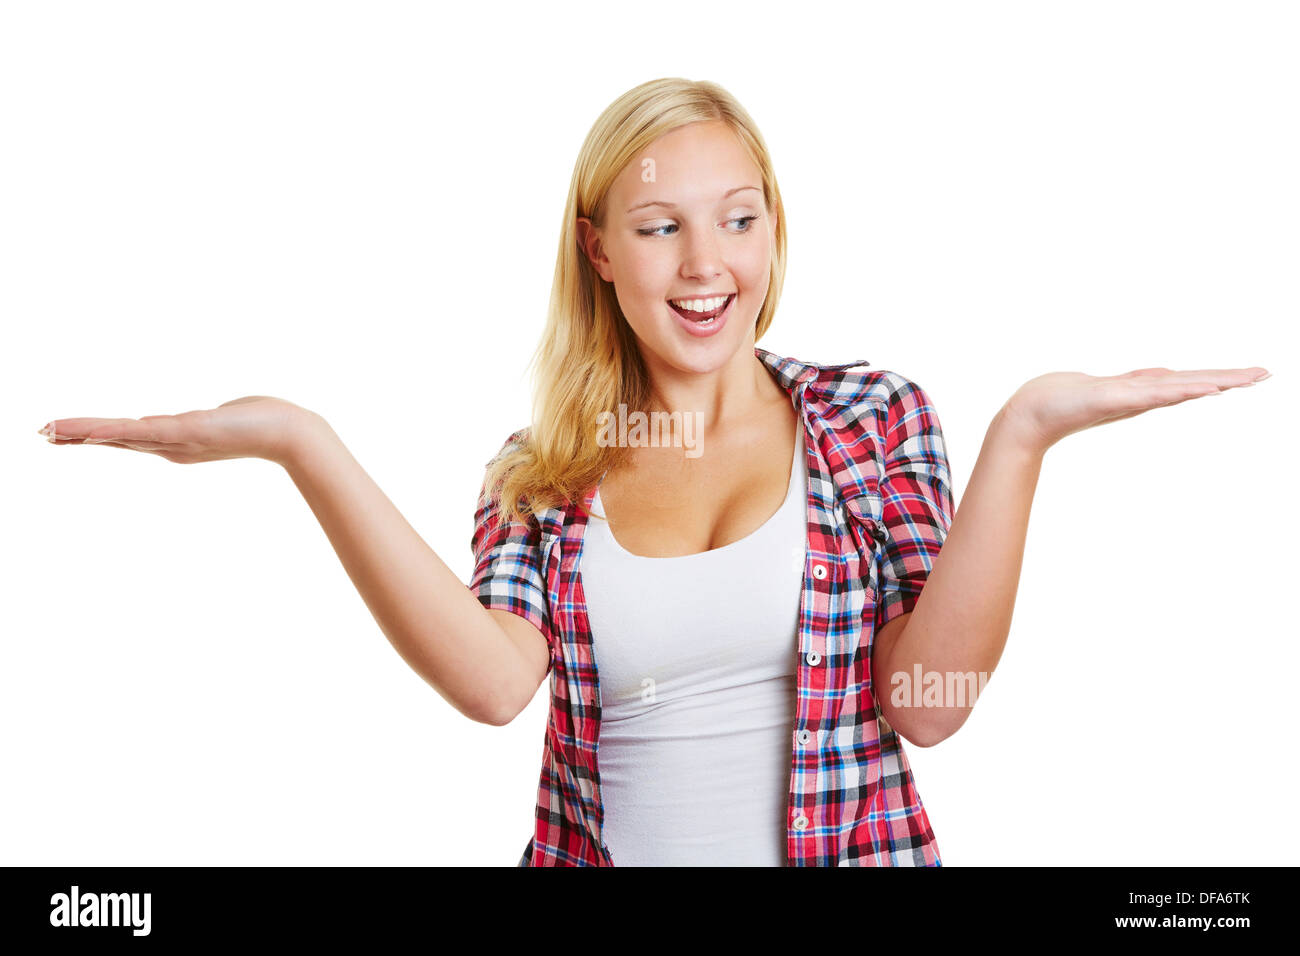 Felice giovane donna mantenendo entrambe le mani aperte per confrontare i prodotti invisibile Foto Stock